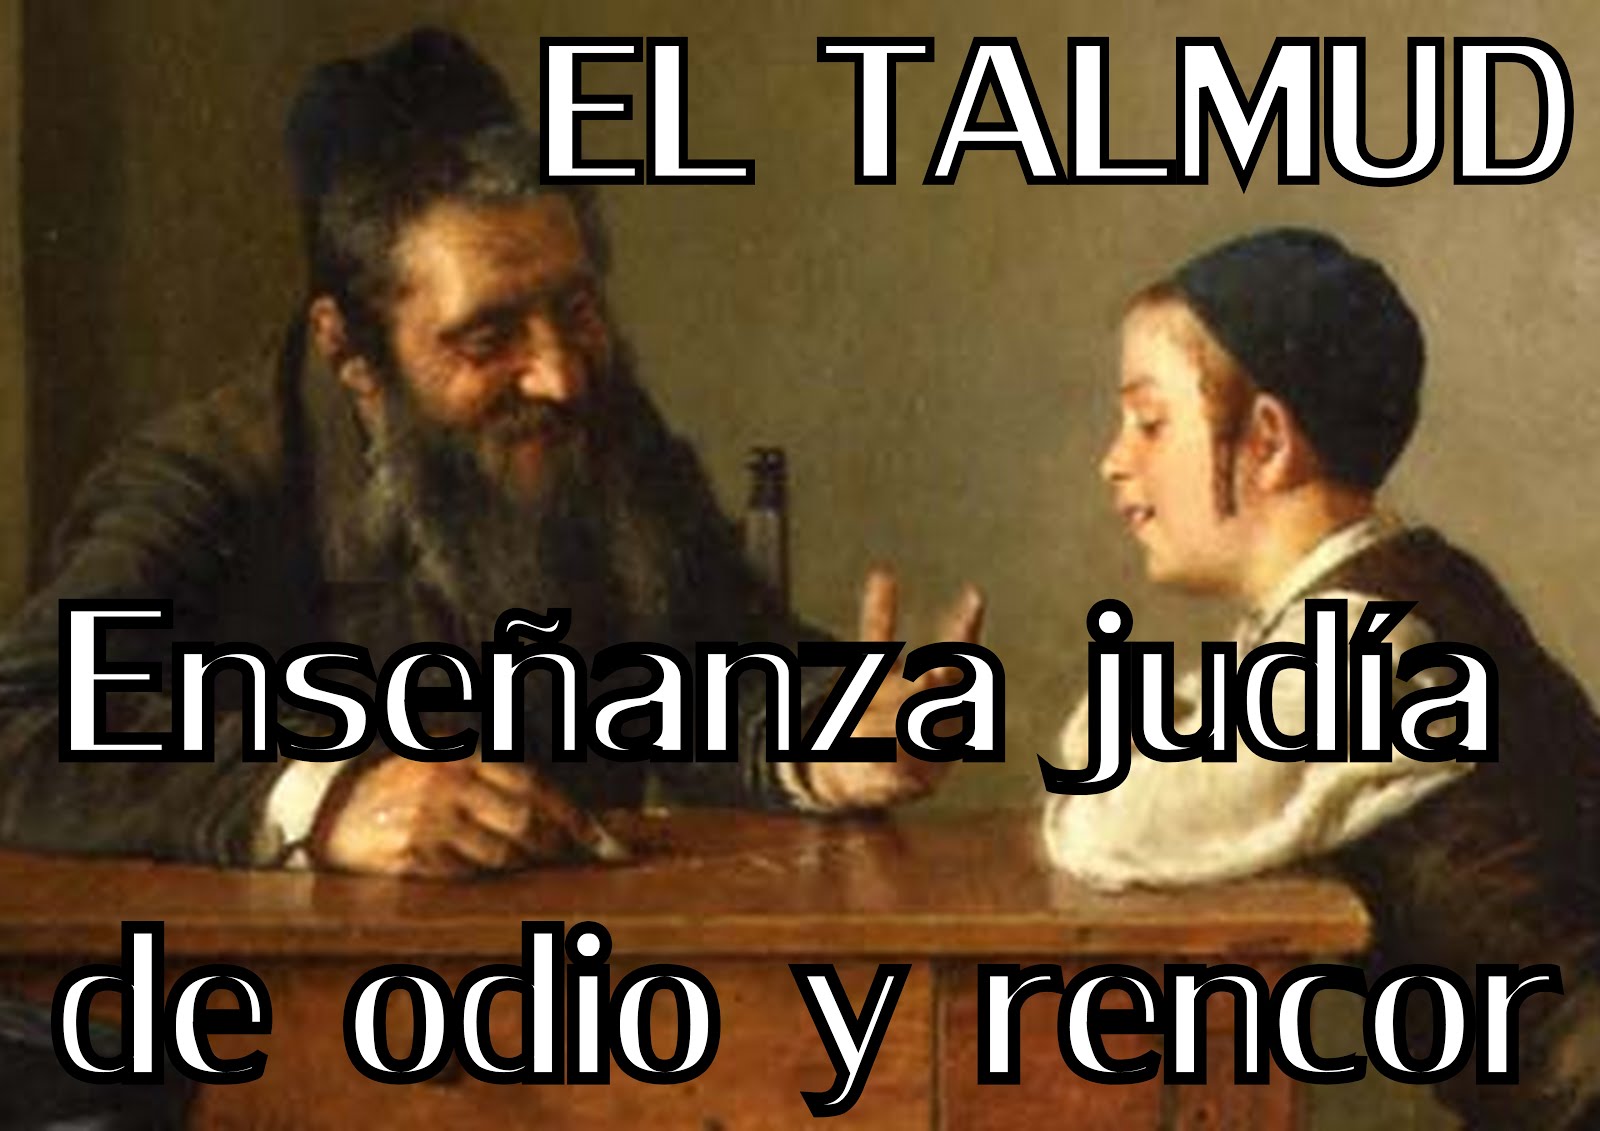 TALMUD, ENSEÑANZA DE ODIO Y RENCOR CONTRA LA HUMANIDAD